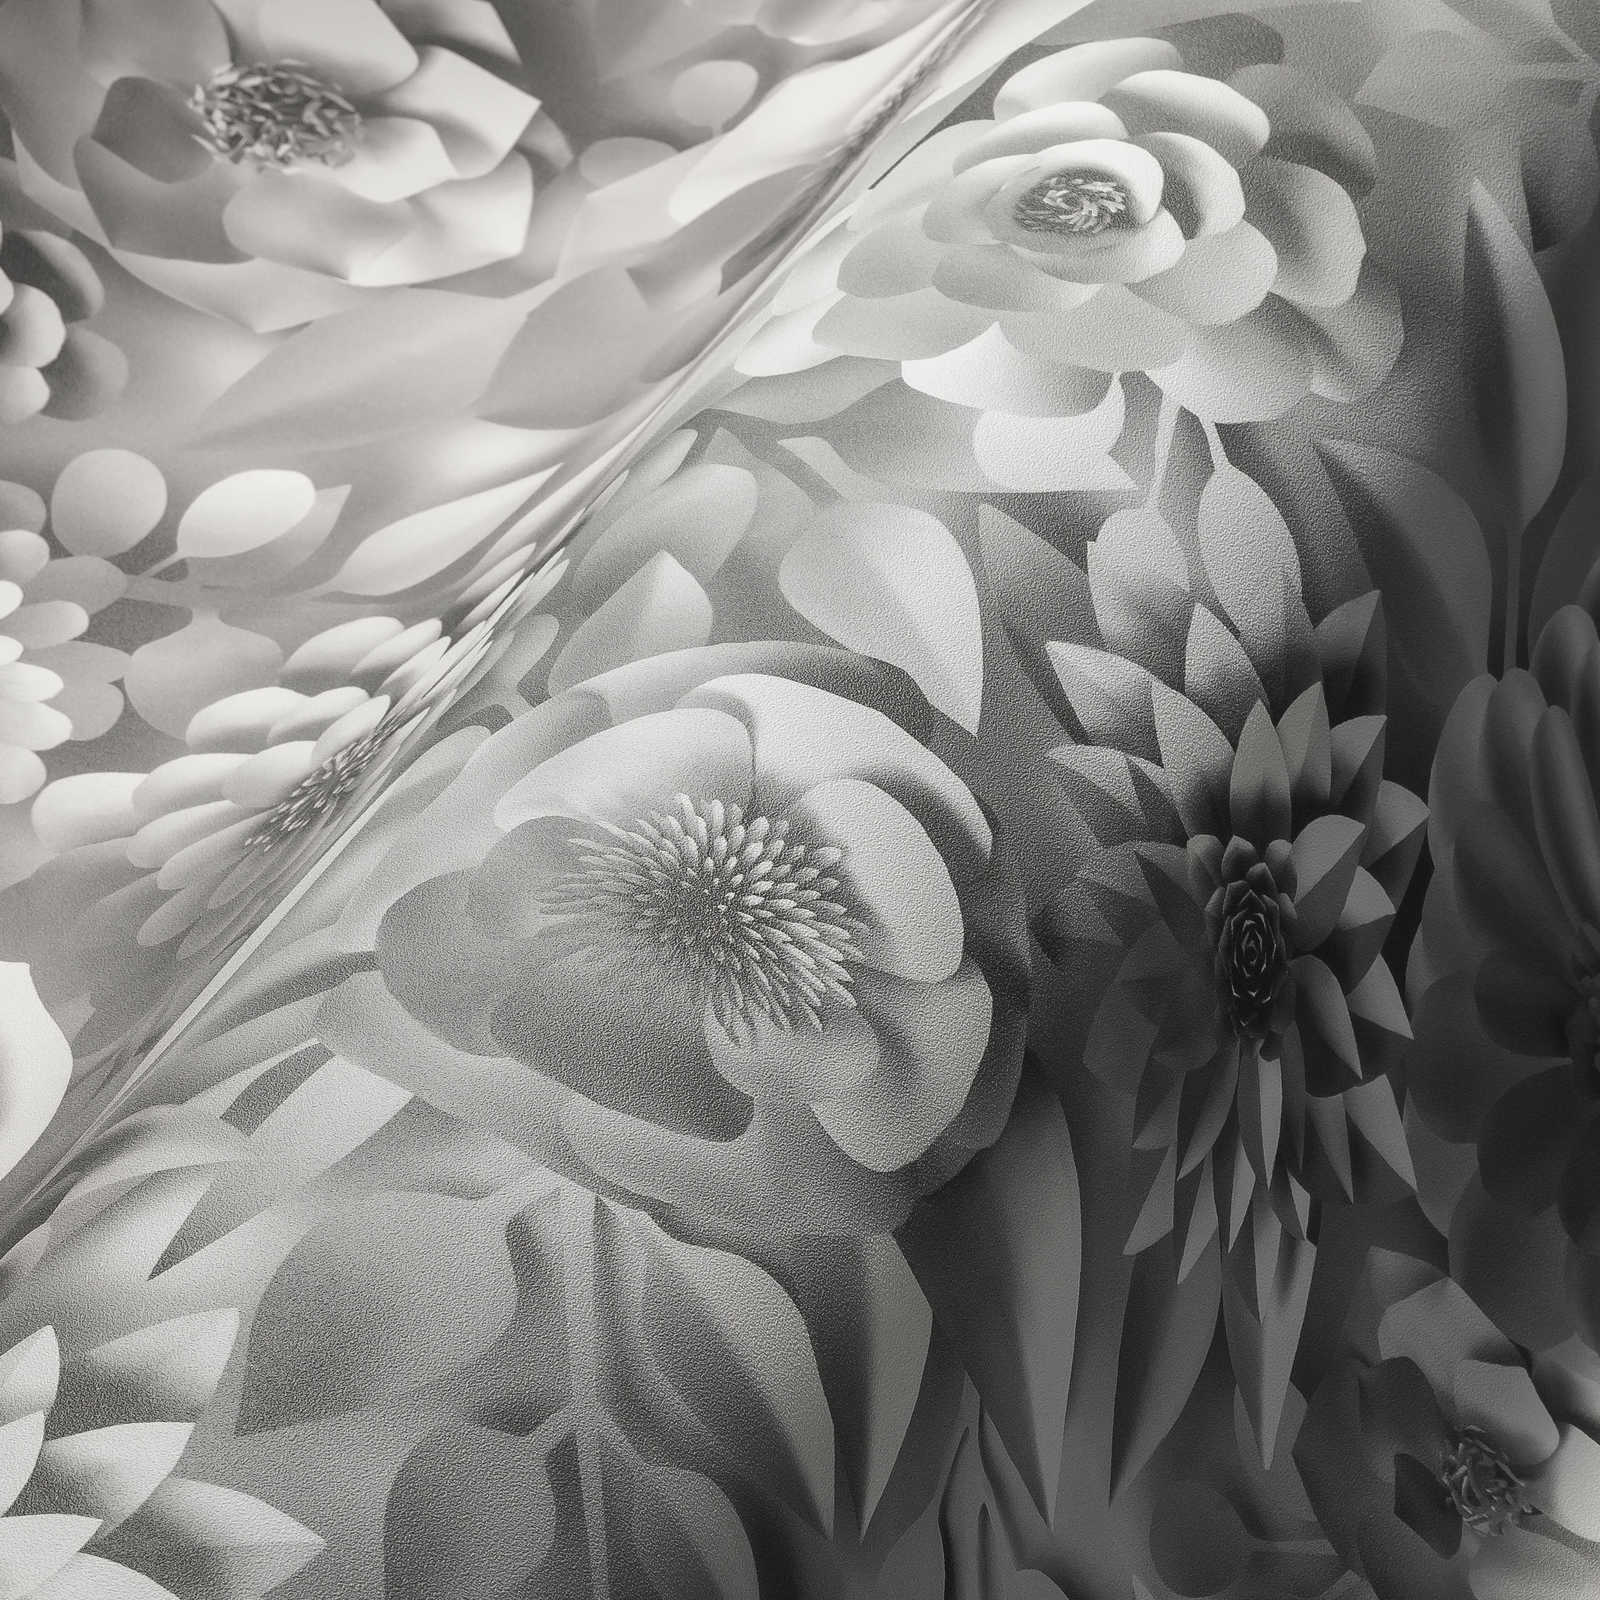             Papier peint 3D avec fleurs en papier, motif graphique de fleurs - blanc
        